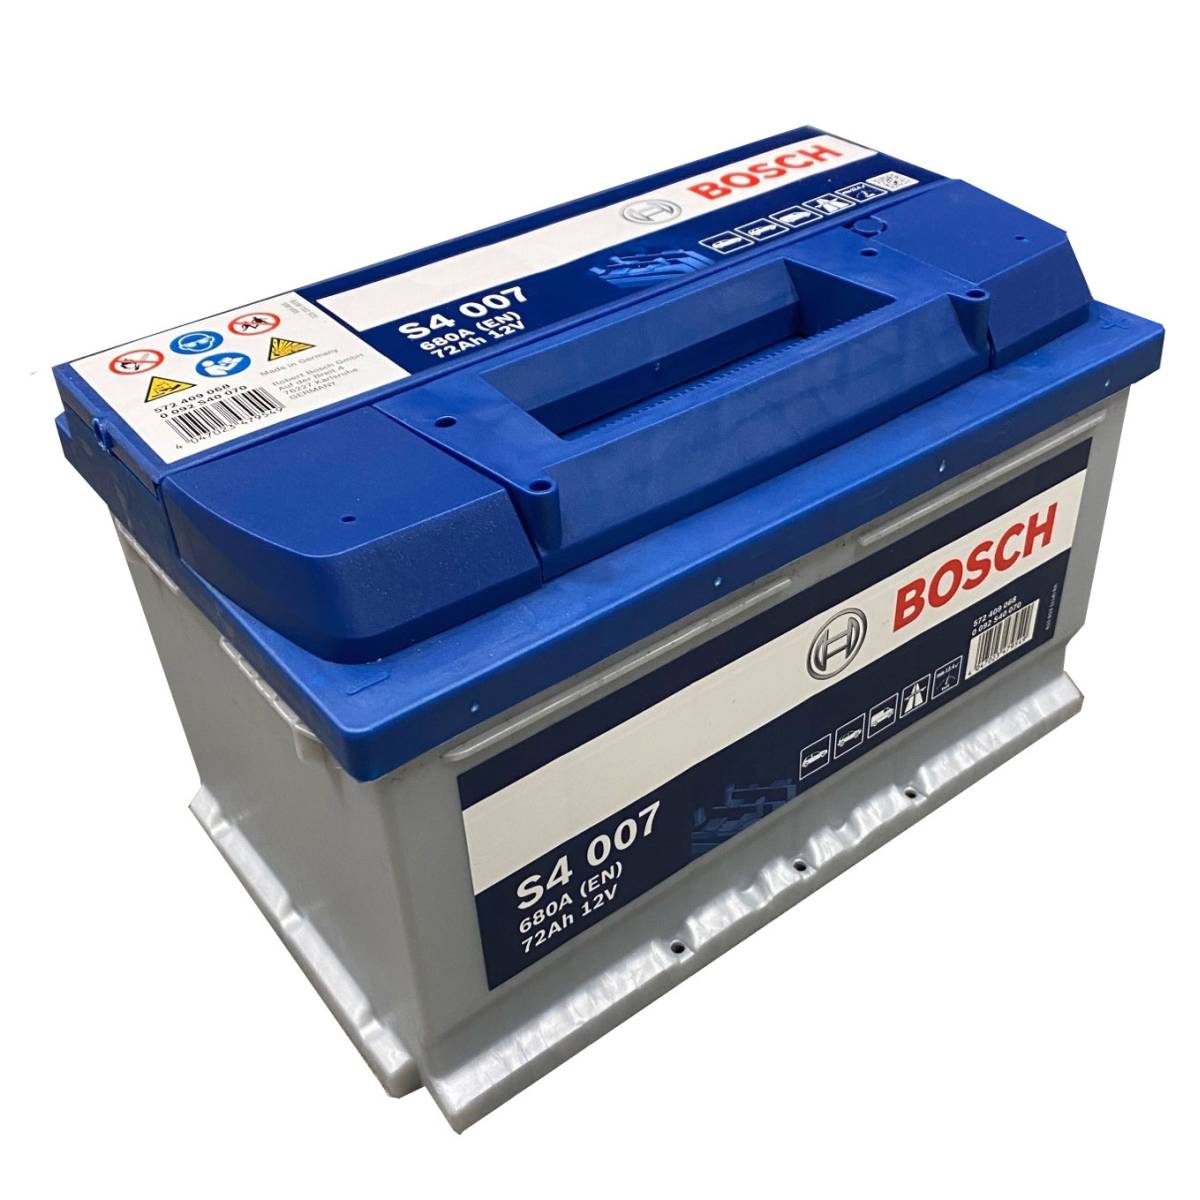 Bosch S4 007 car battery12V 72 Ah 680A, Starter batteries